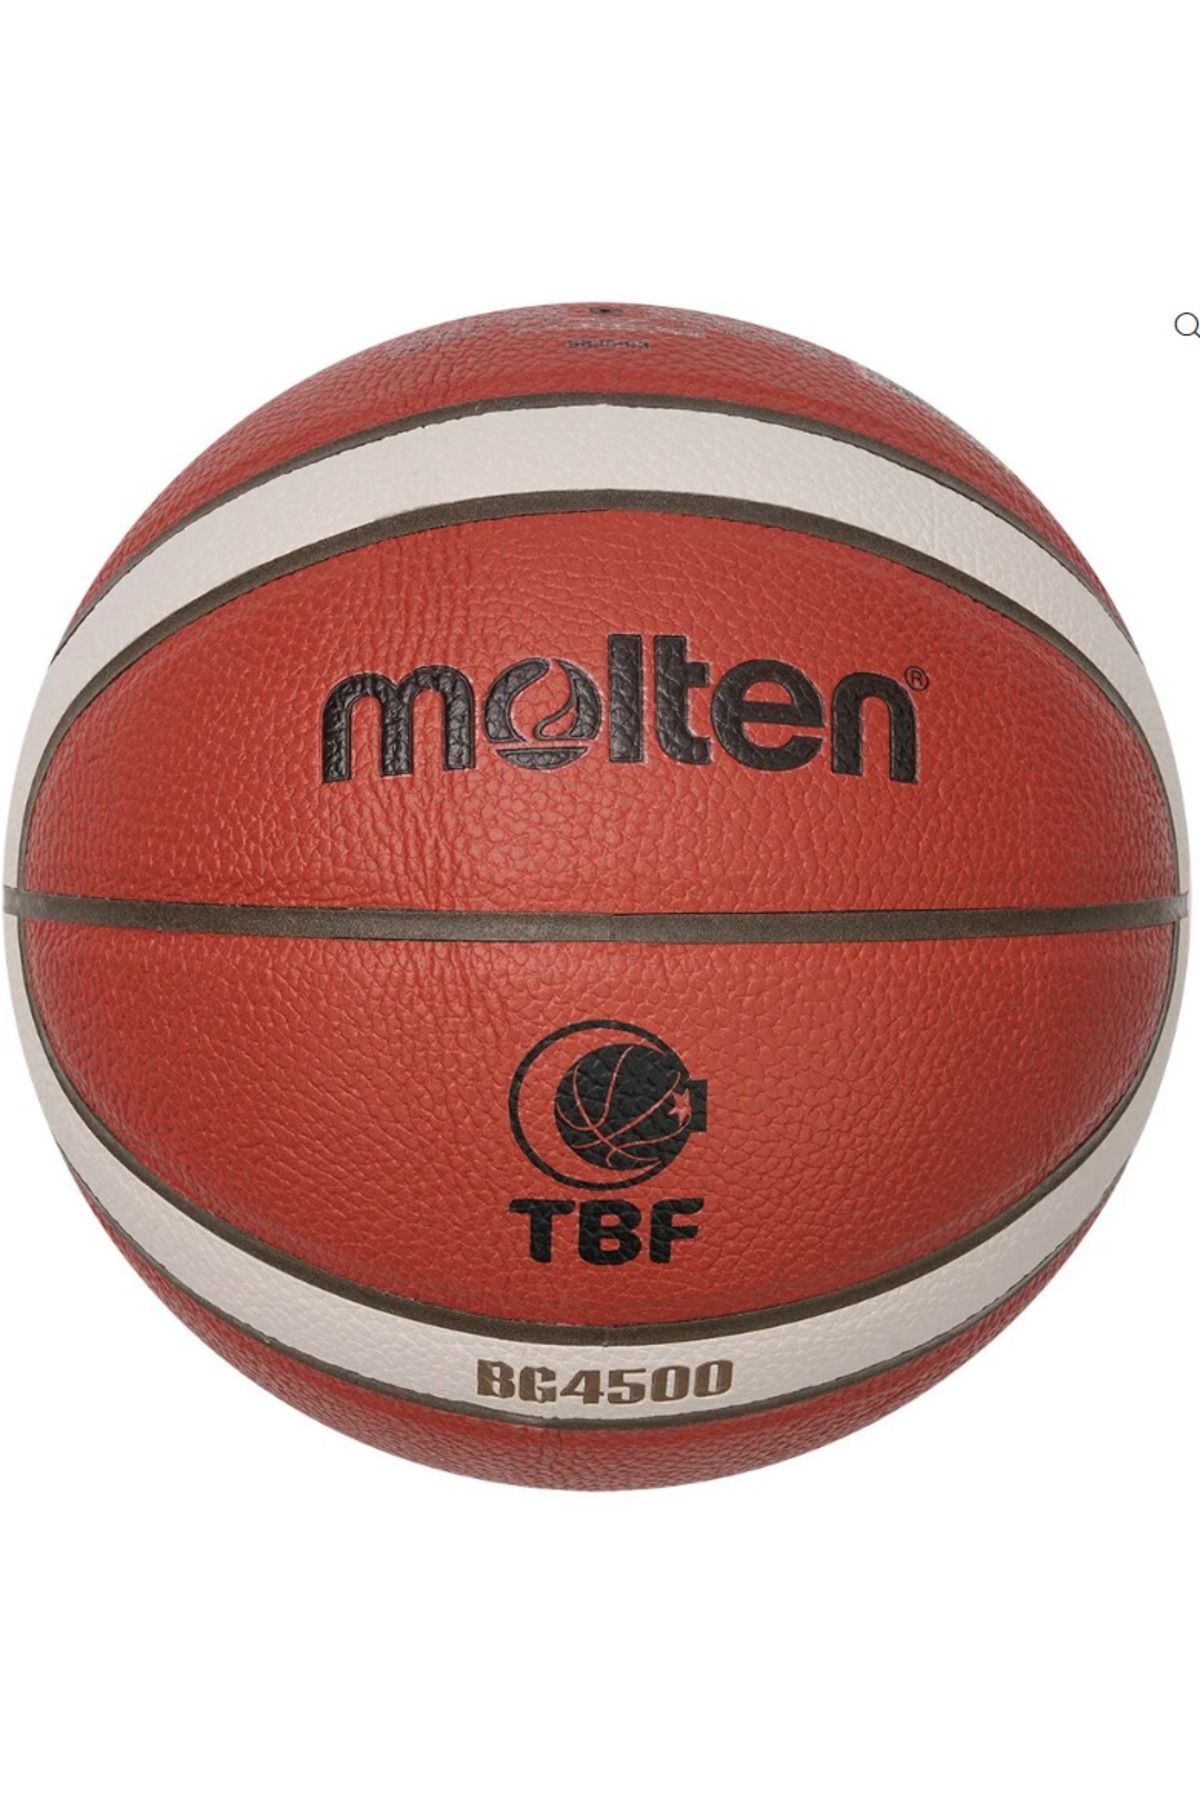 Genel Markalar Turuncu Fıba Onaylı 7 No Tbl Basketbol Maç Topu B7g4500 FIBA 7 Numara Pompa dahil değildir